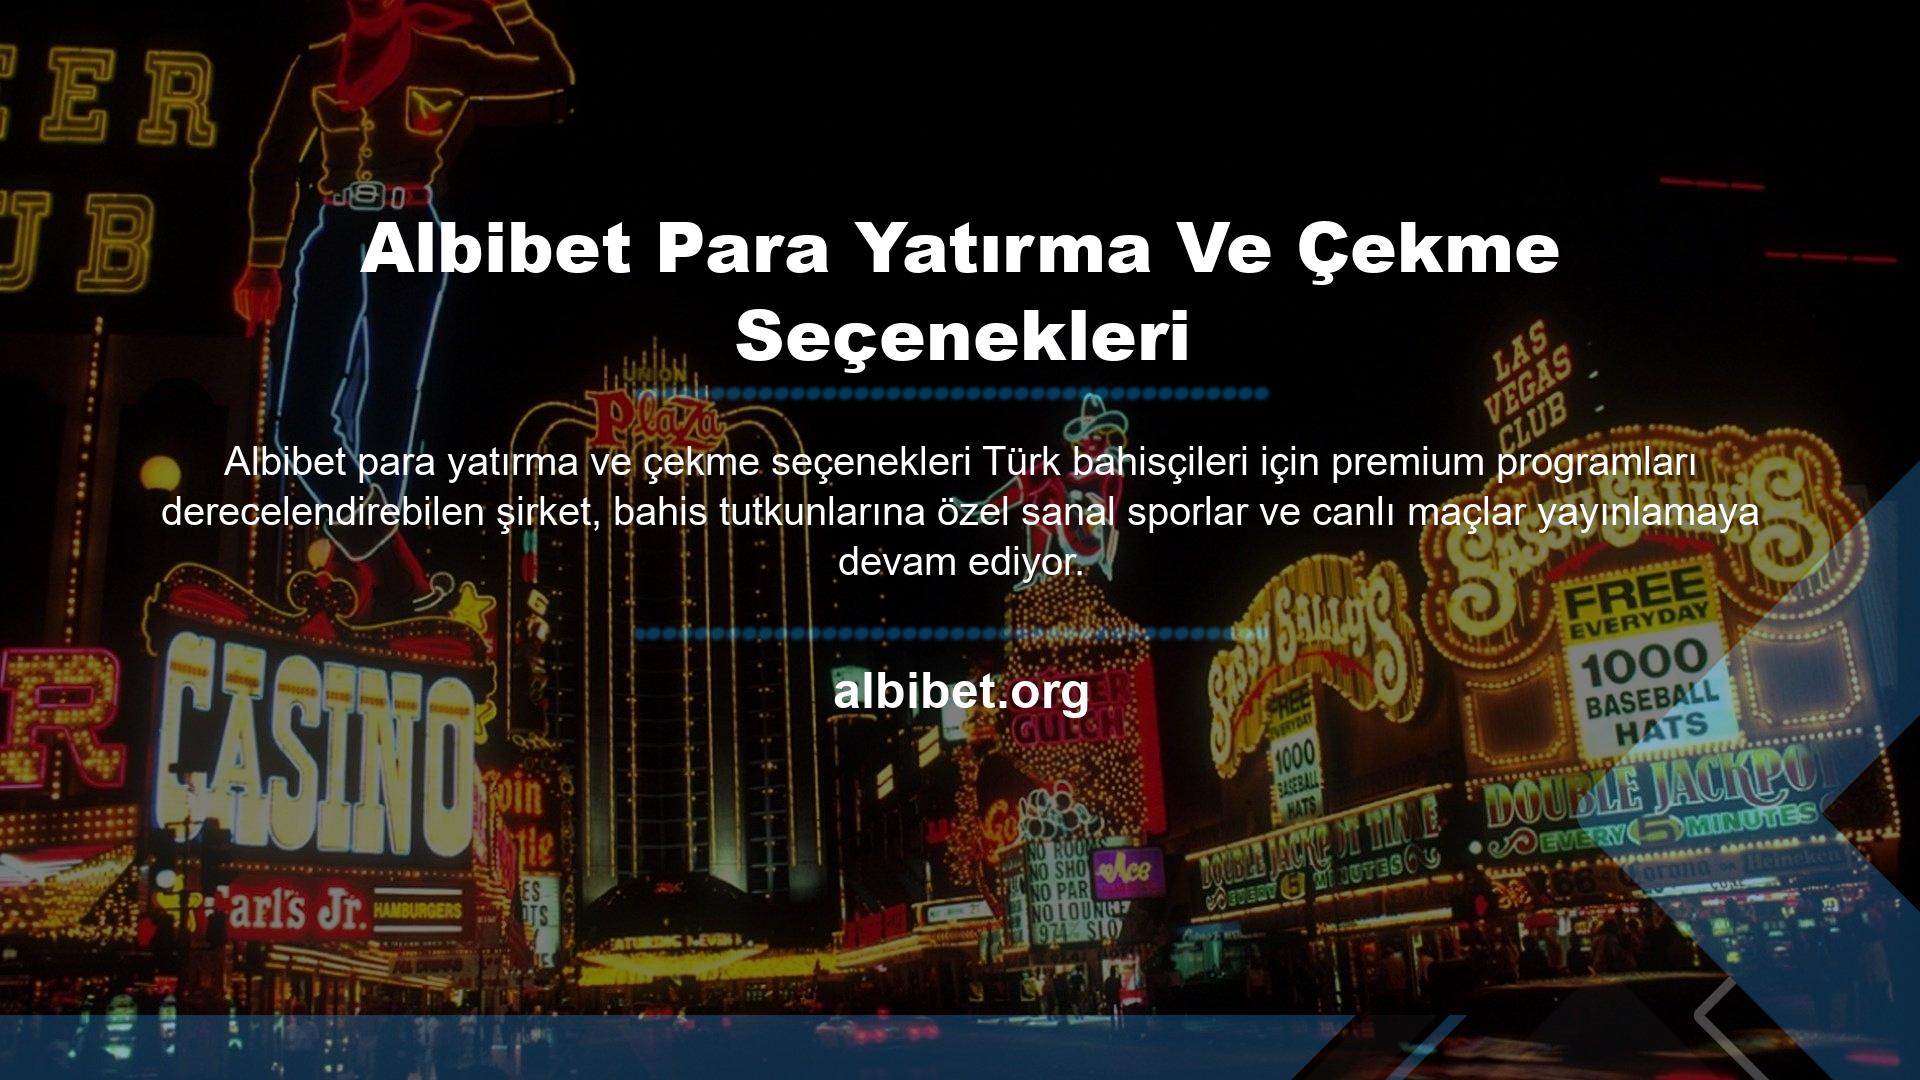 Yönetim ekibi, kullanıcılarının 7/24 erişilebilir olan mevcut Albibet alan adını kullanarak bahis oynamaya devam etmeleri için yeni para yatırma ve çekme seçenekleri sunar